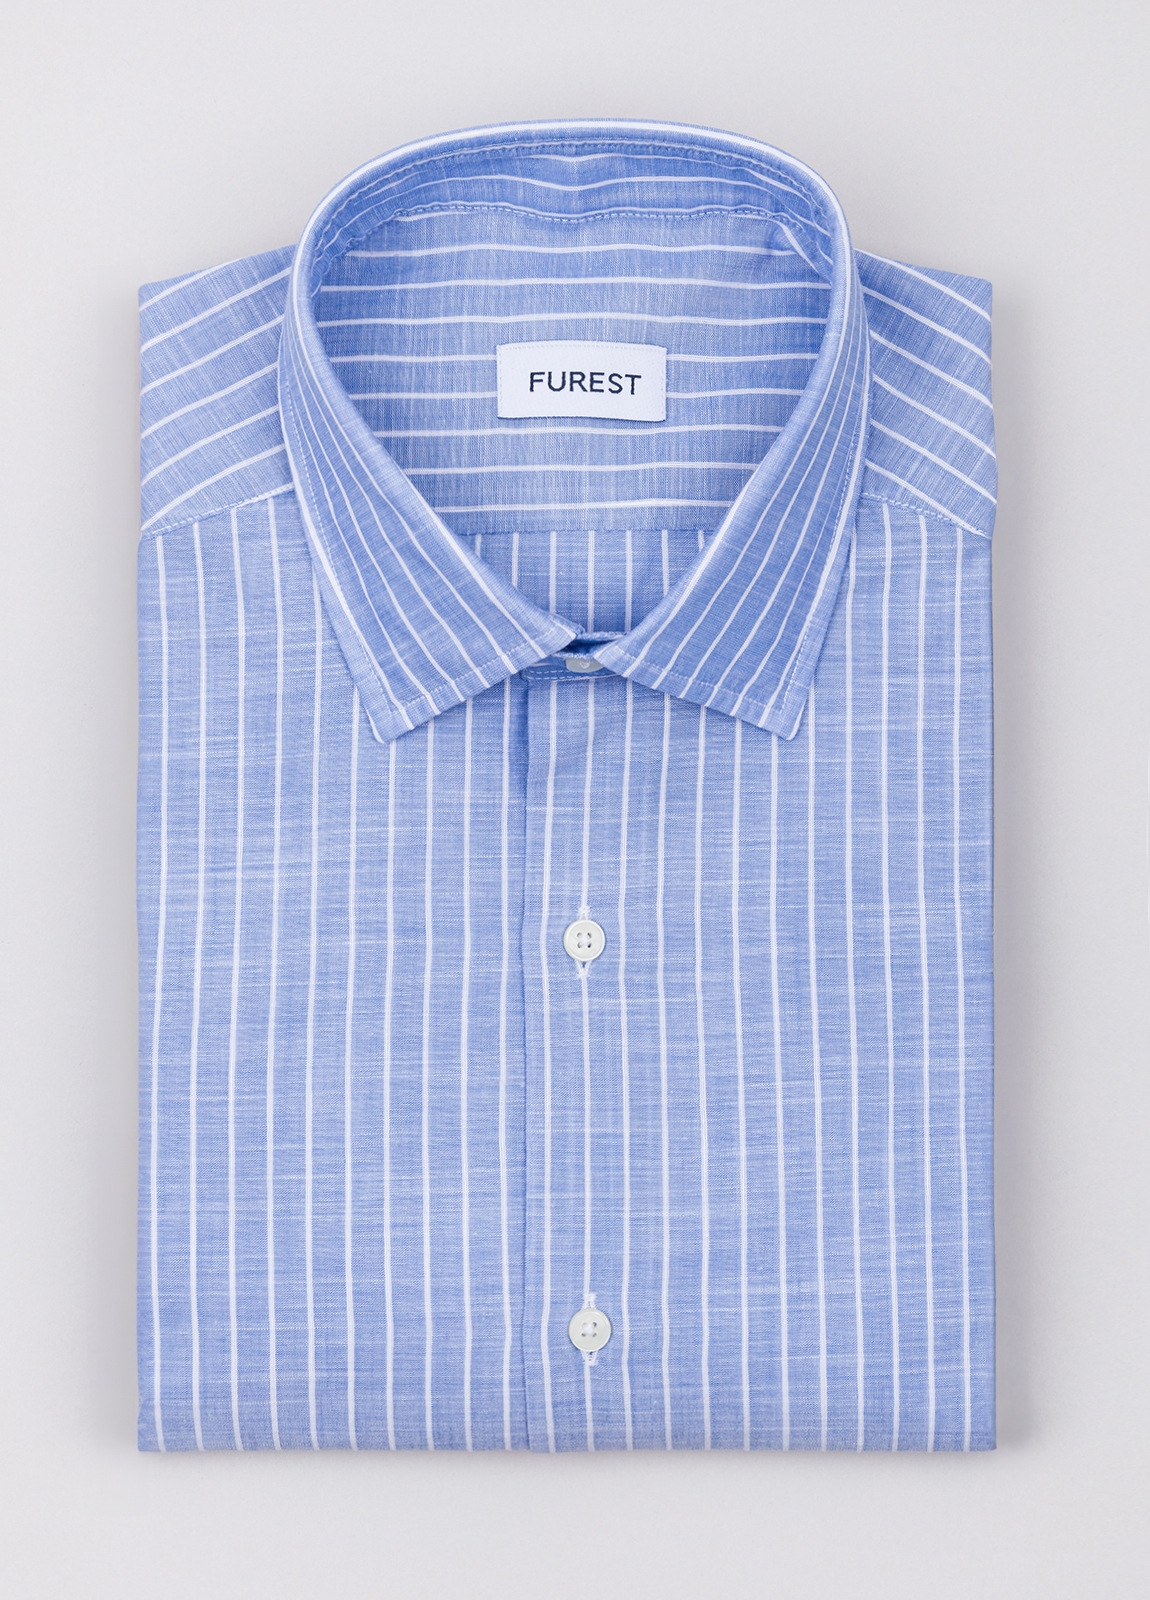 Camisa sport FUREST COLECCIÓN algodón y lino rayas color celeste - Ítem1